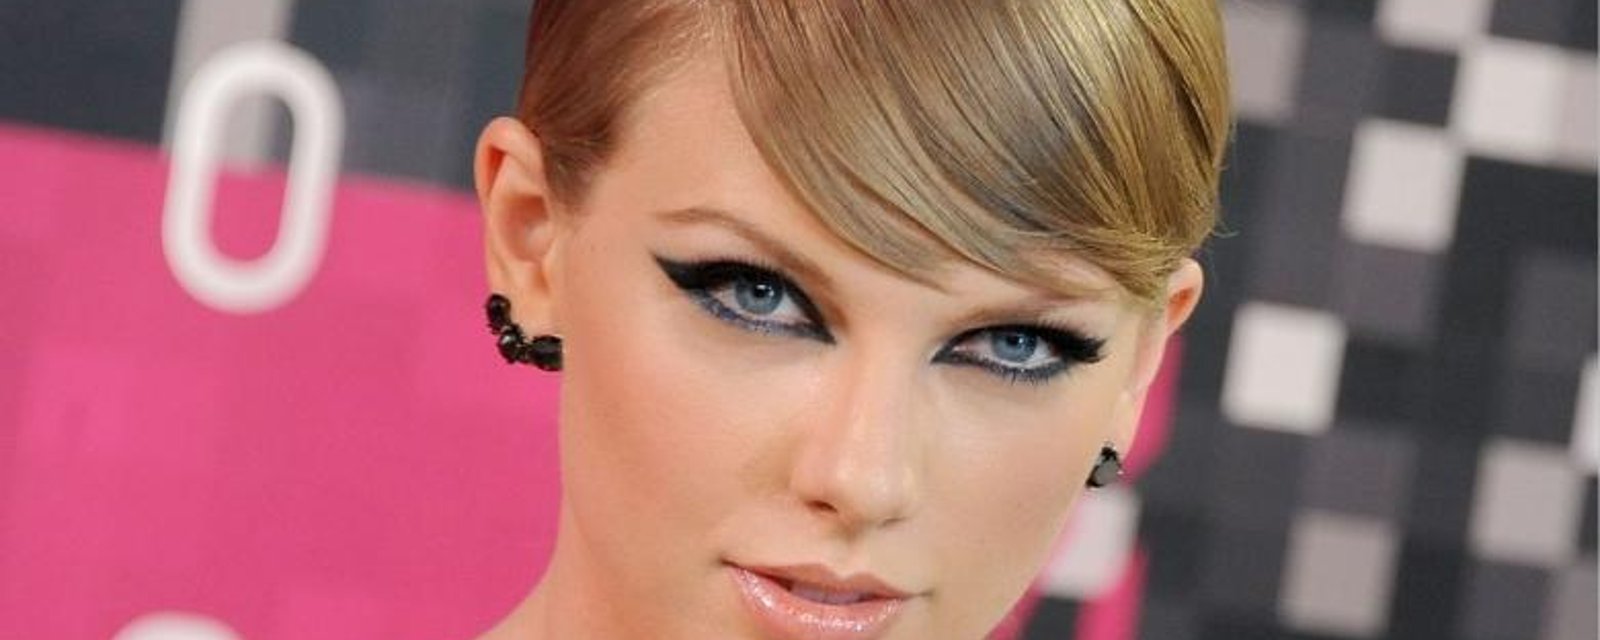 2 semaines après sa séparation, Taylor Swift a un nouveau célèbre chum!